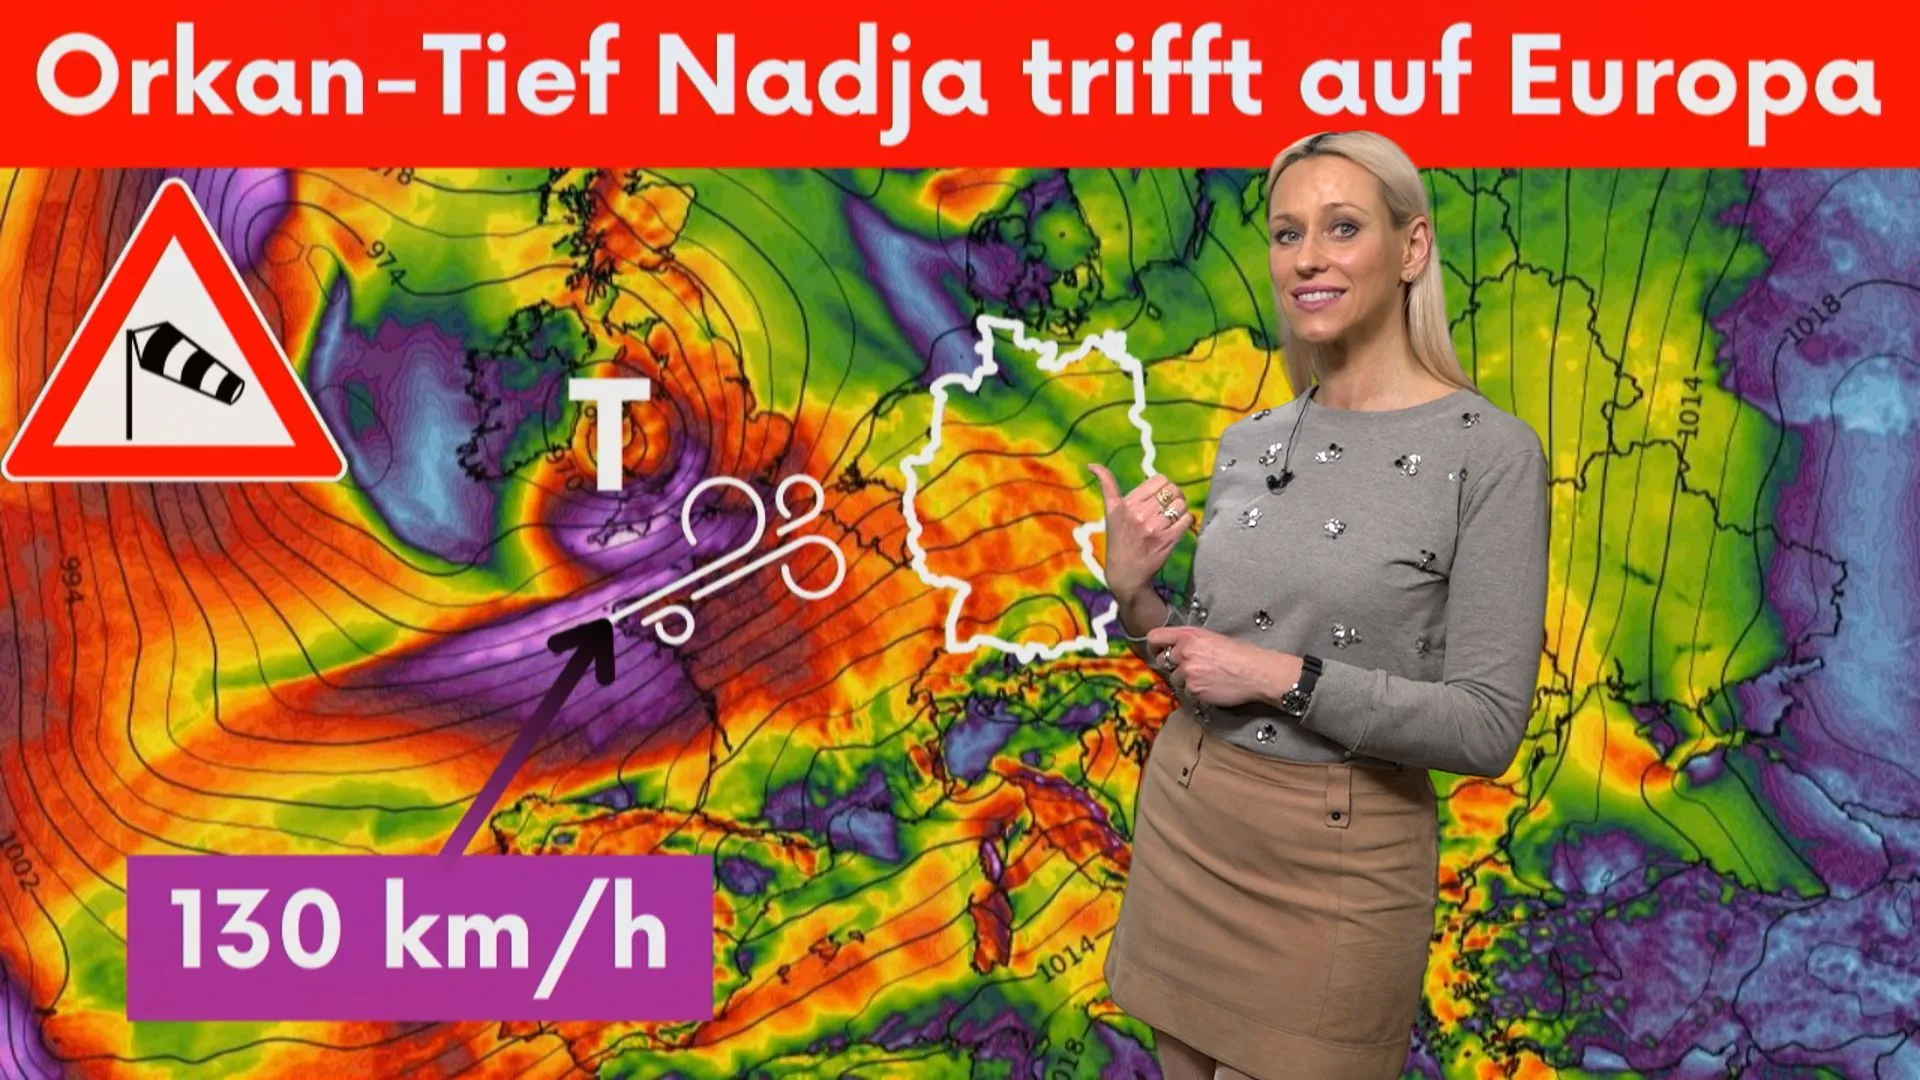 Attenzione: Pasqua burrascosa in Germania? L'uragano Nadja attraversa l'Europa!